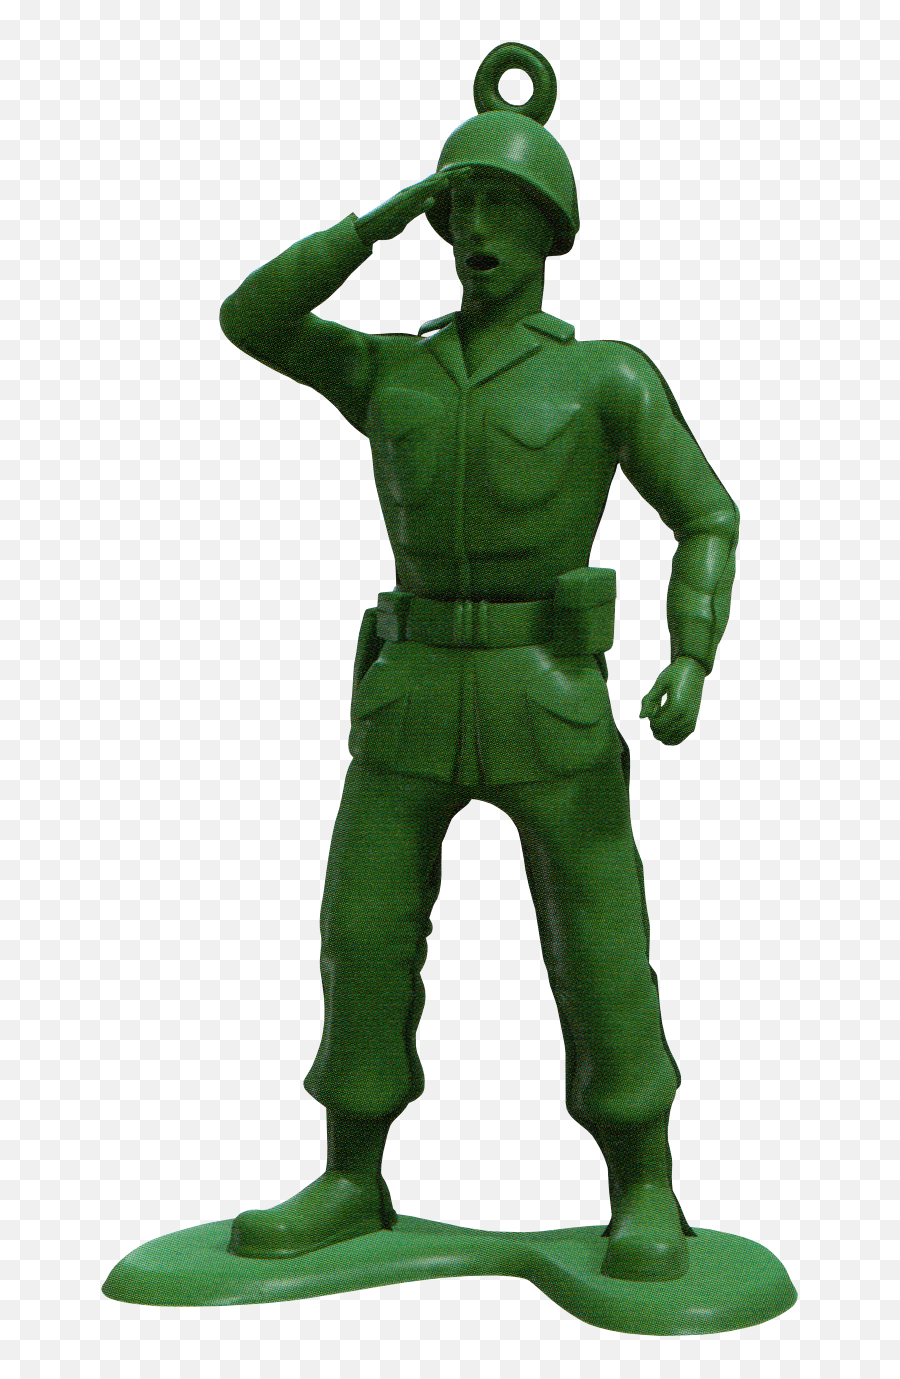 Green Army Men - Kingdom Hearts Wiki The Kingdom Hearts Green Army Men Png,Army Helmet Png